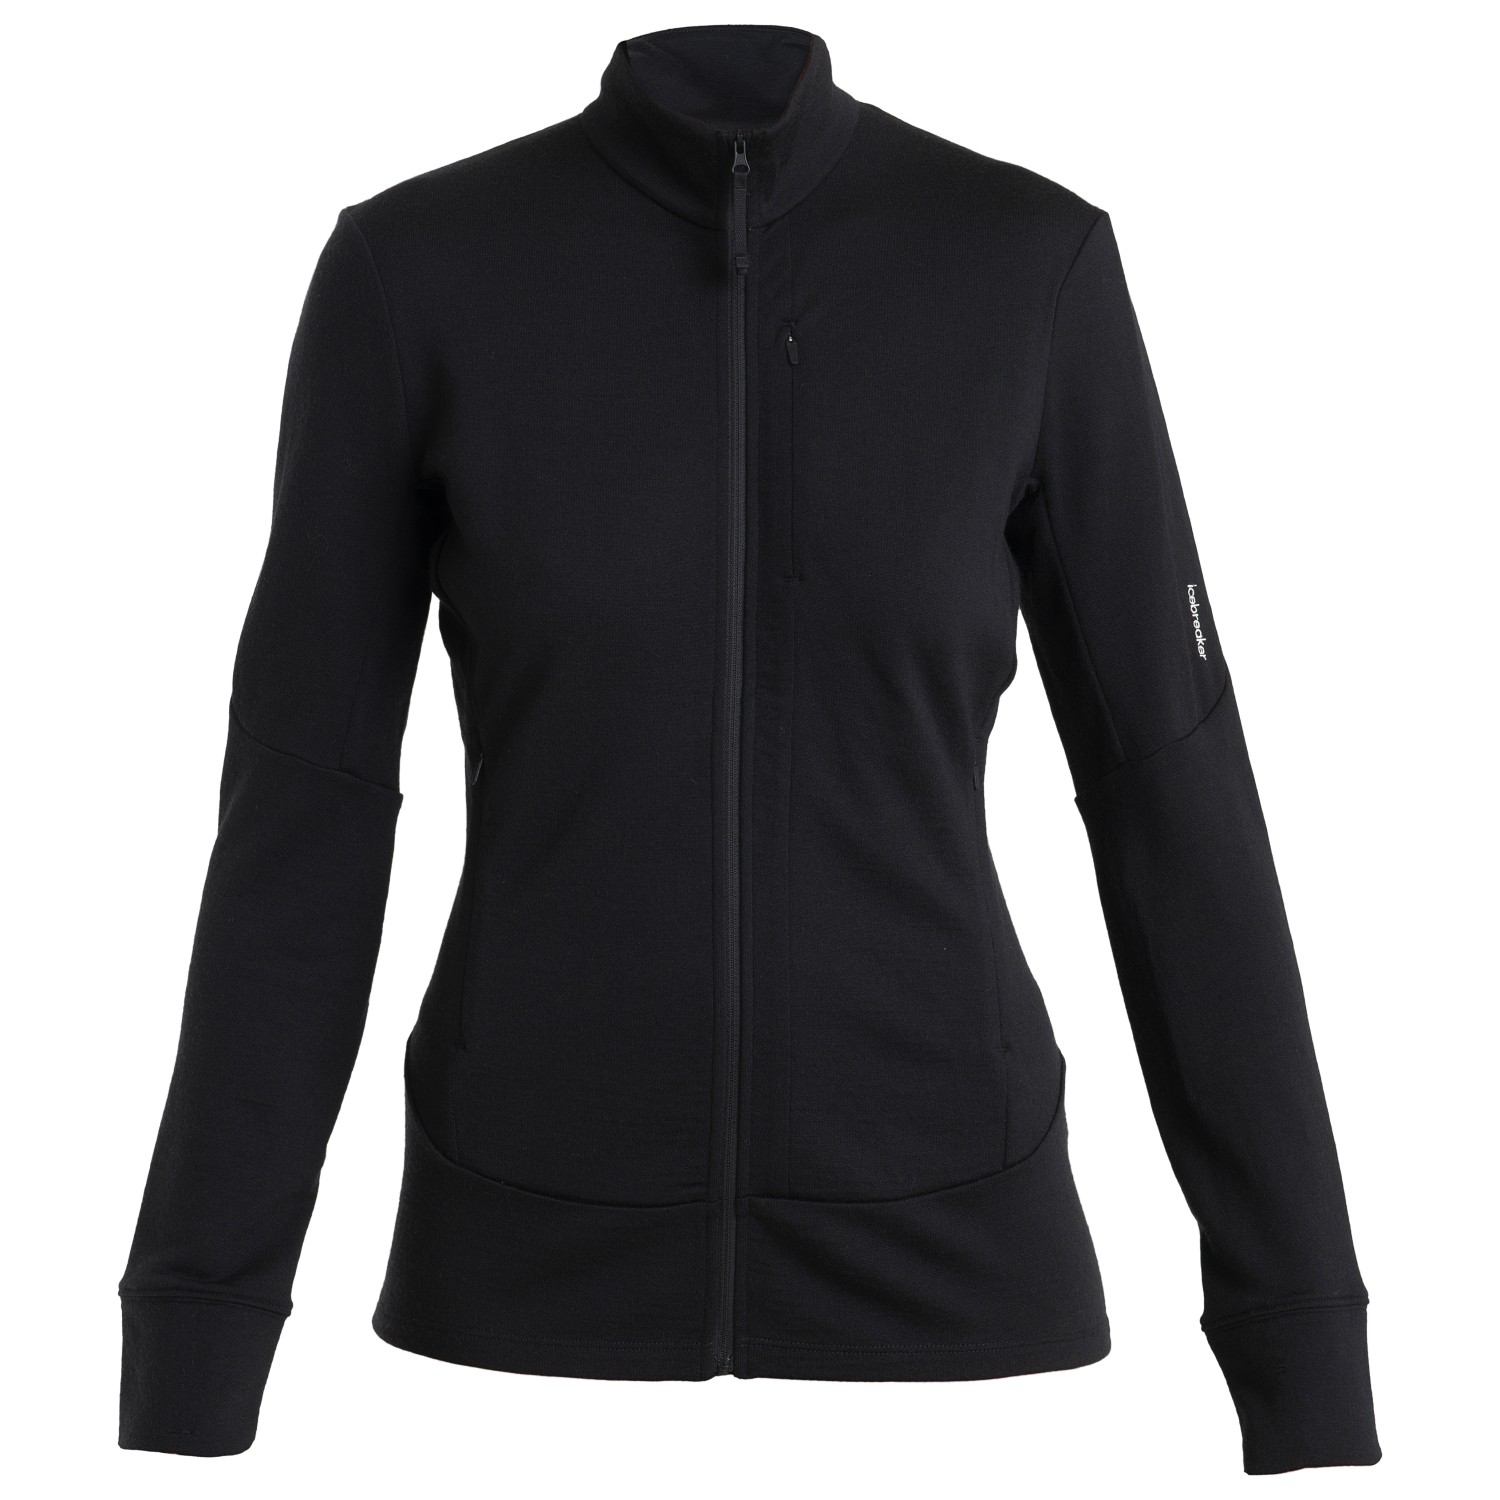 Куртка из мериноса Icebreaker Women's Merino 260 Quantum IV L/S Zip, черный